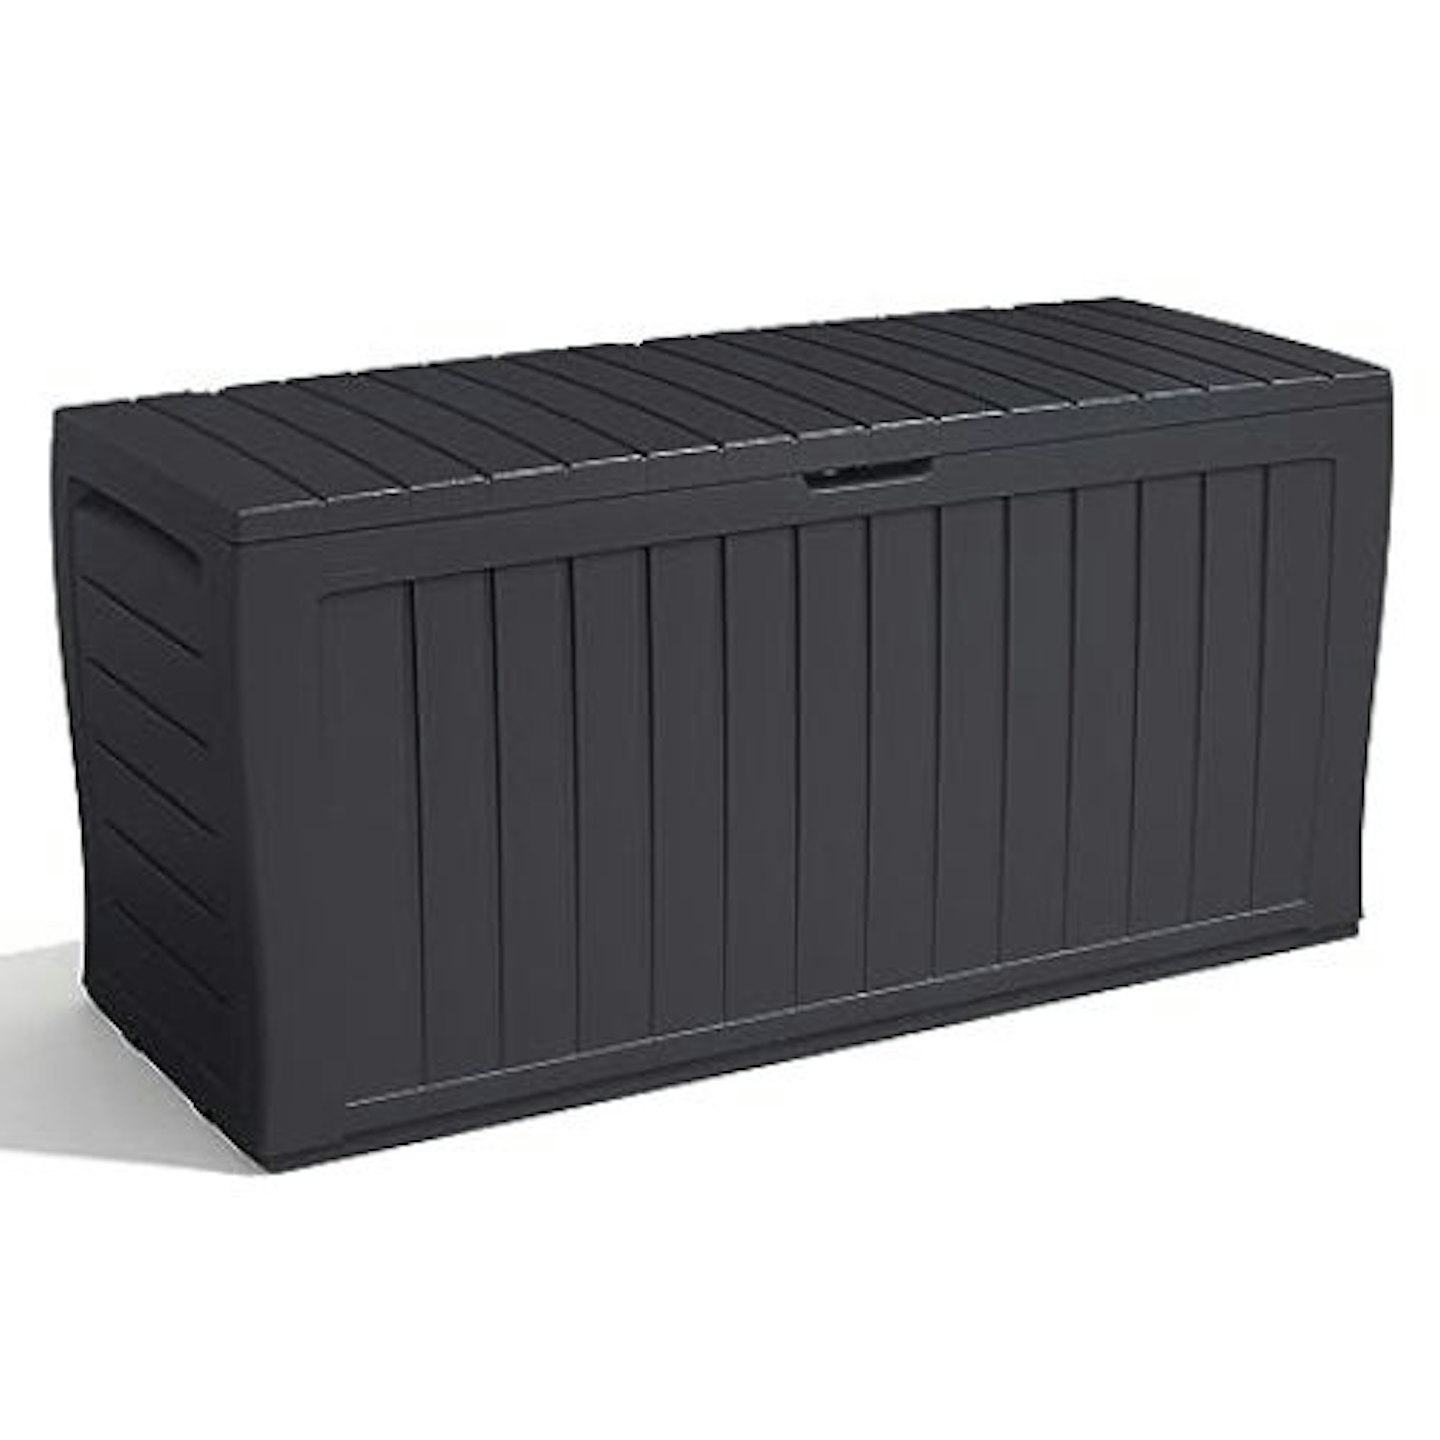 Keter Marvel+ Garden Furniture Storage Box